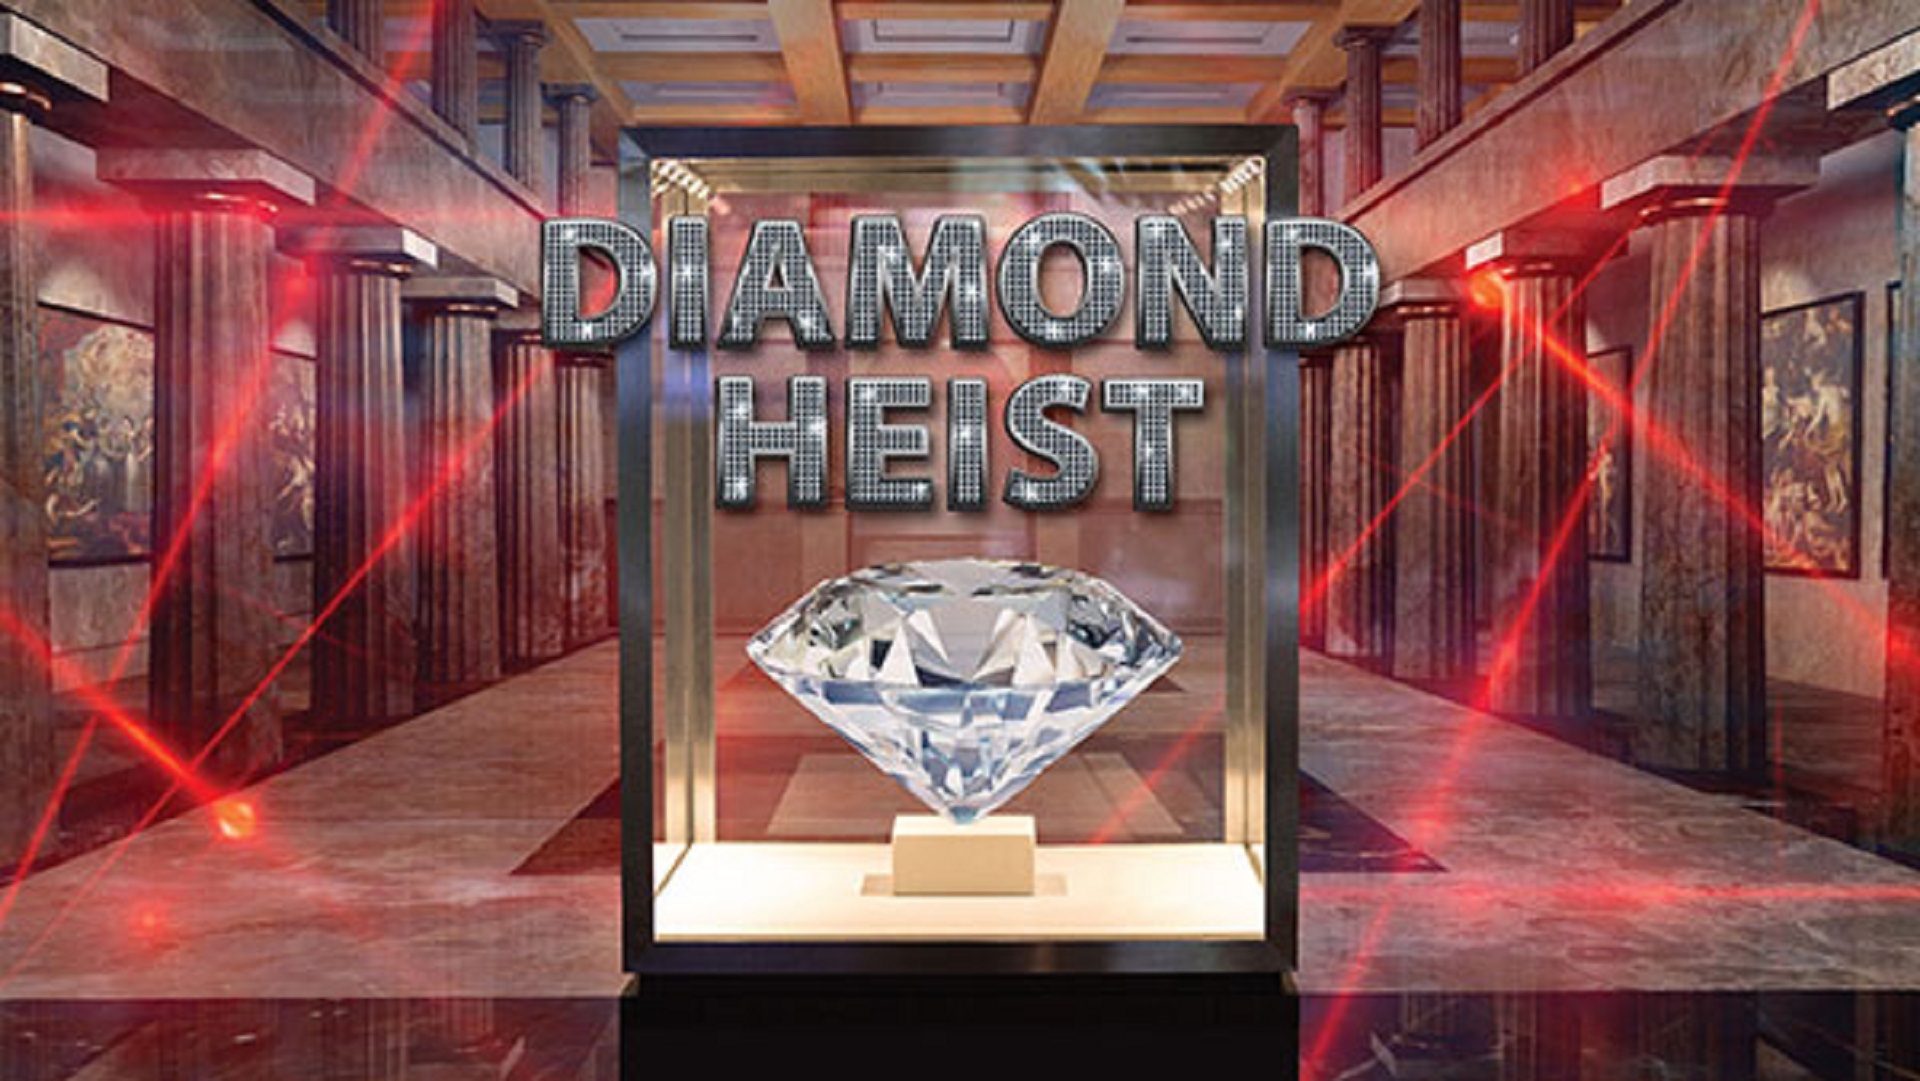 Diamond Heist